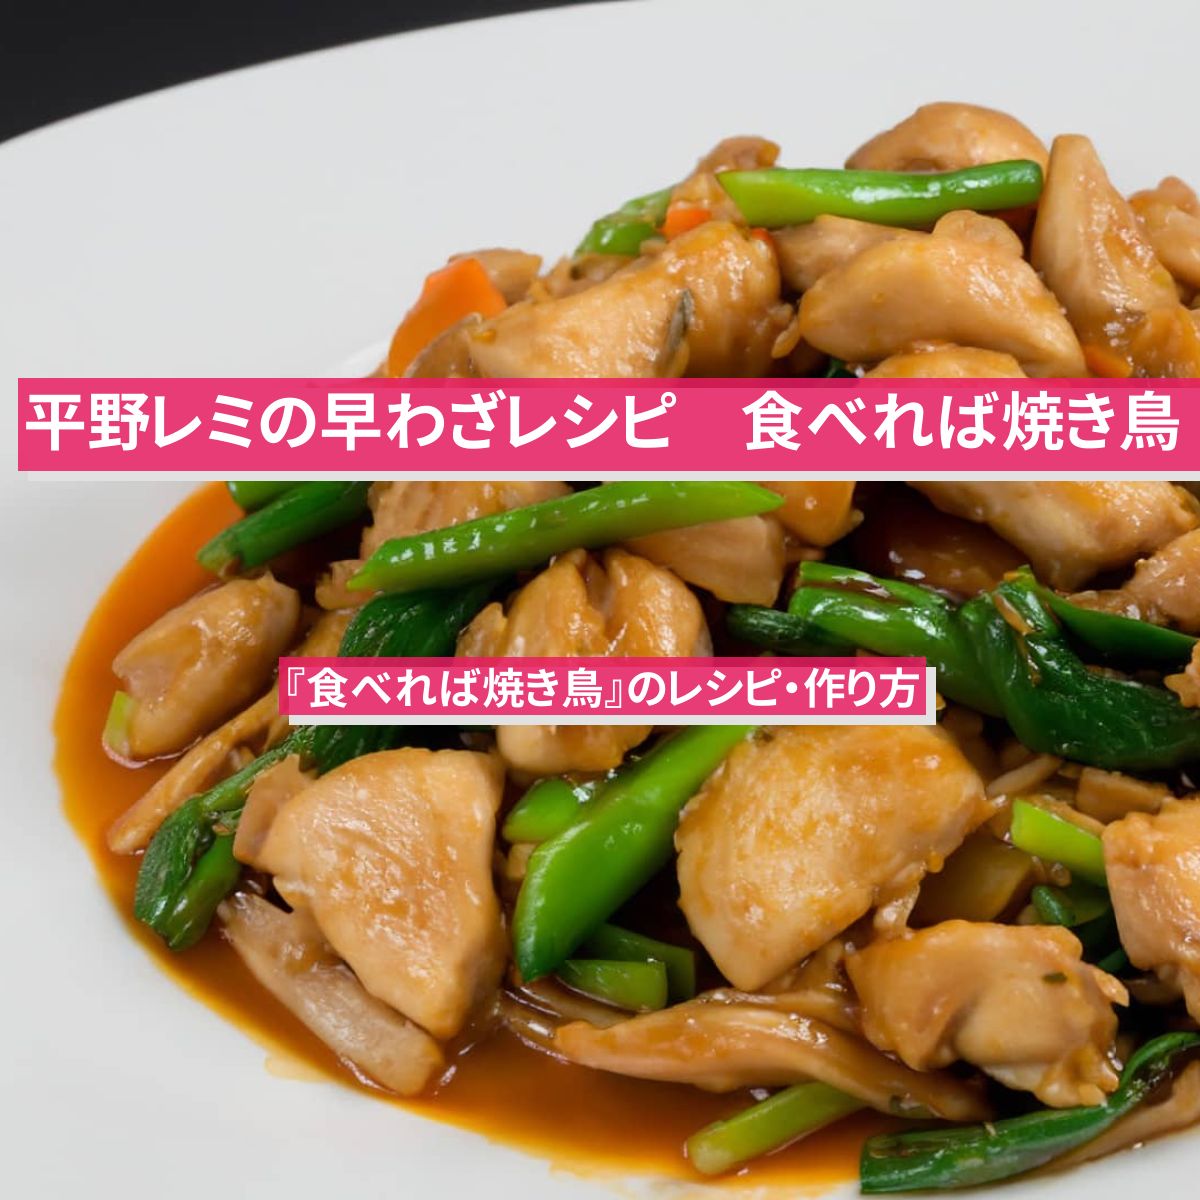 【平野レミの早わざレシピ】『食べれば焼き鳥』のレシピ・作り方